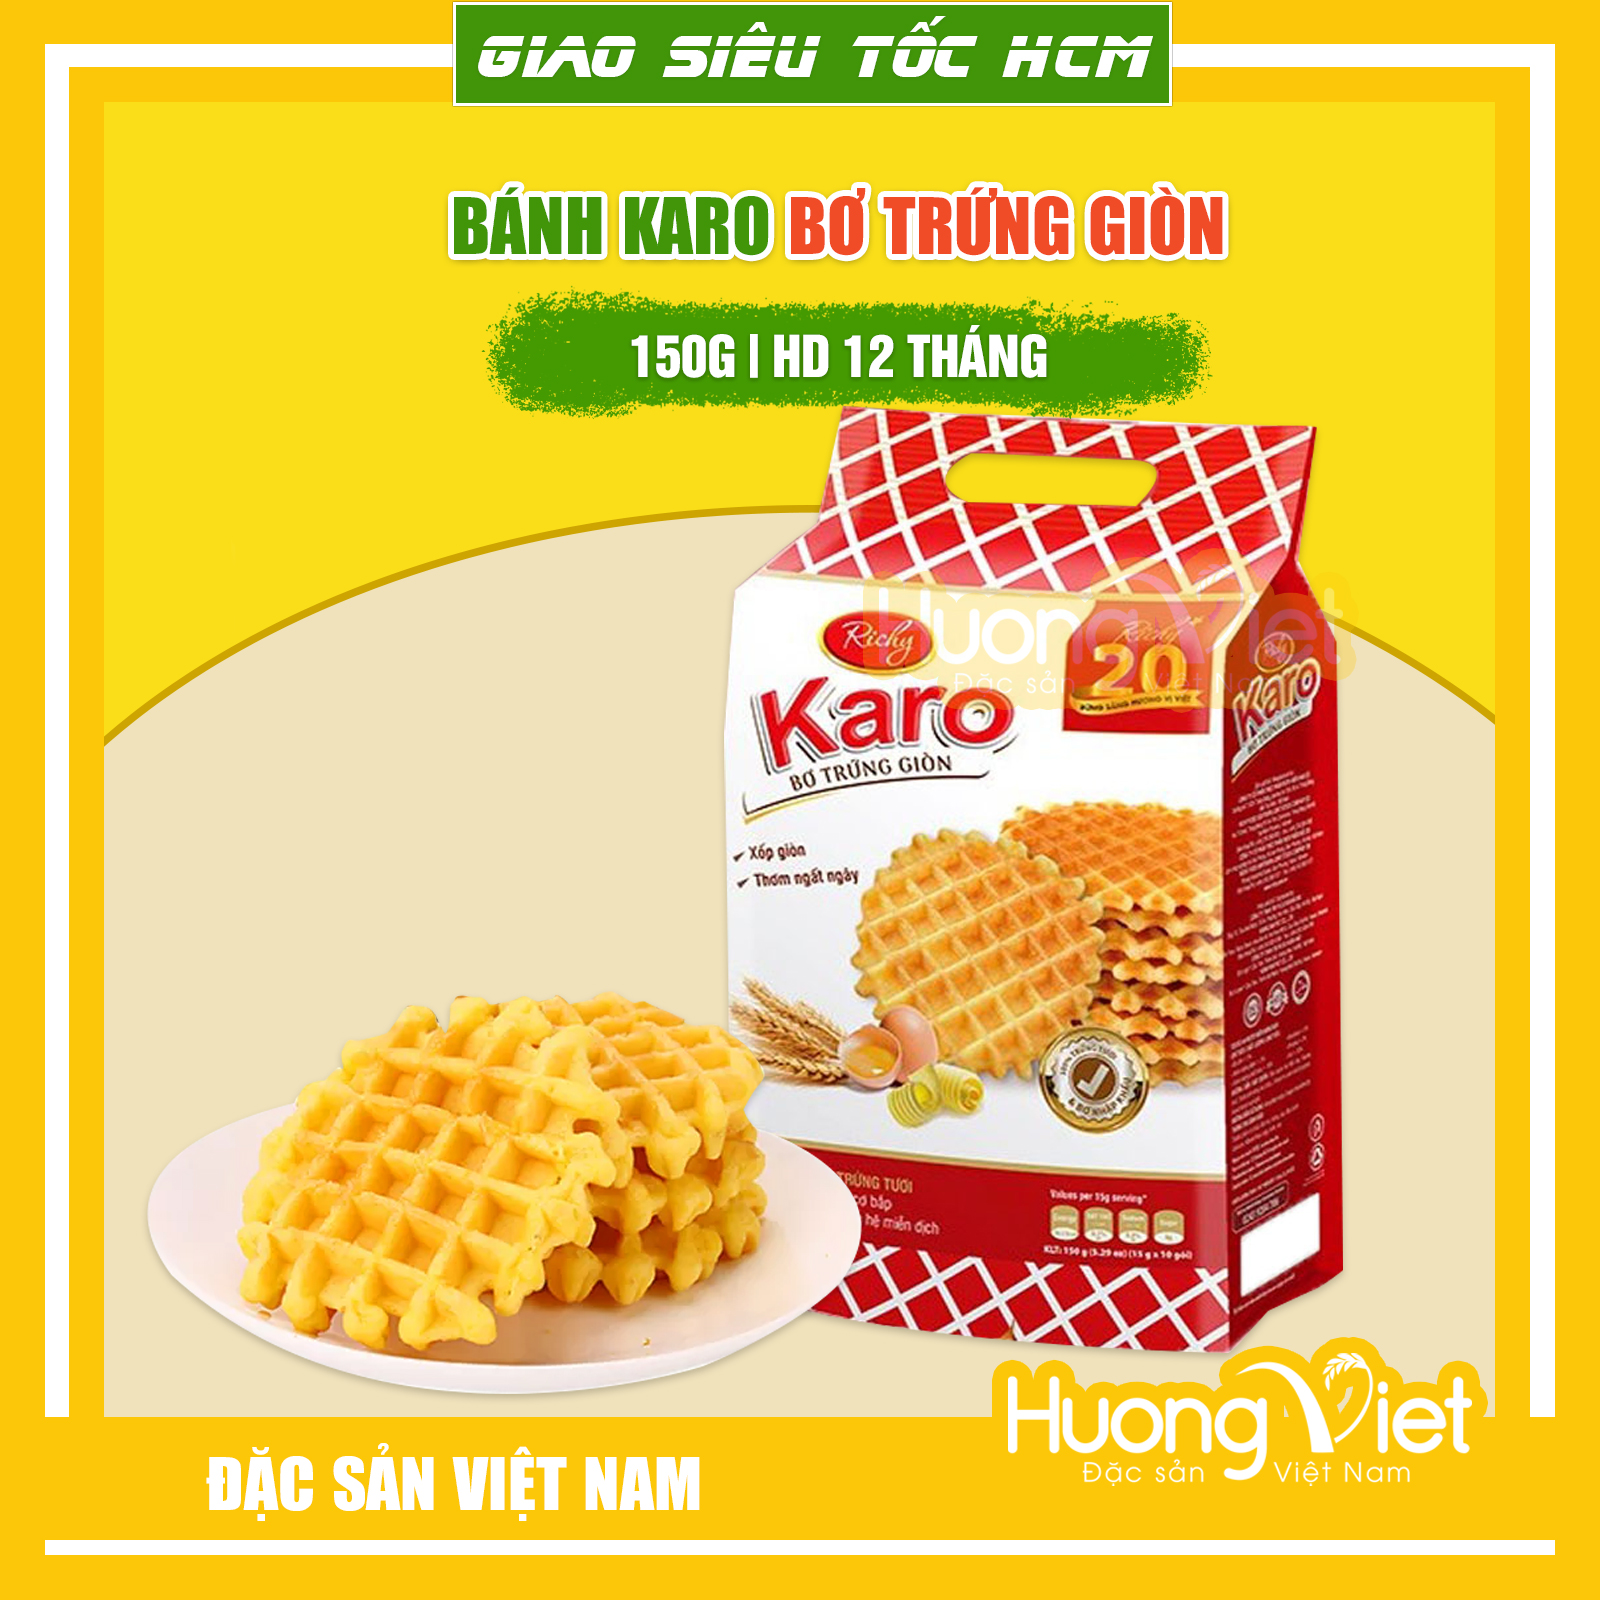 Bánh Karo bơ trứng giòn Richy 150g (10 gói x 15g) , HSD: 12 tháng, bánh Karo giòn, bánh ăn sáng ngon